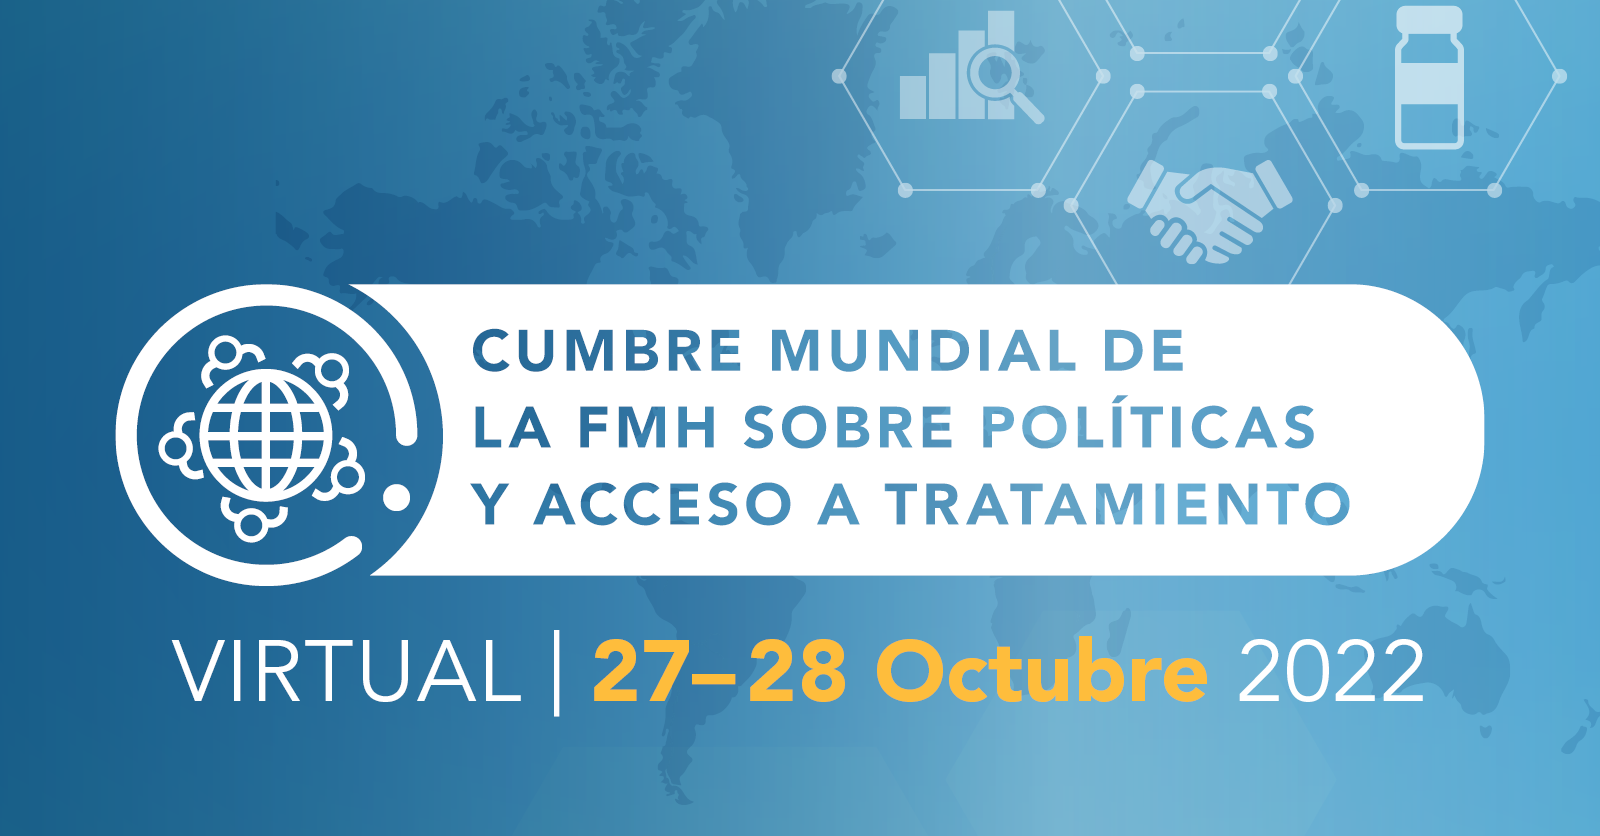 Cumbre mundial de la FMH sobre políticas y acceso a tratamiento